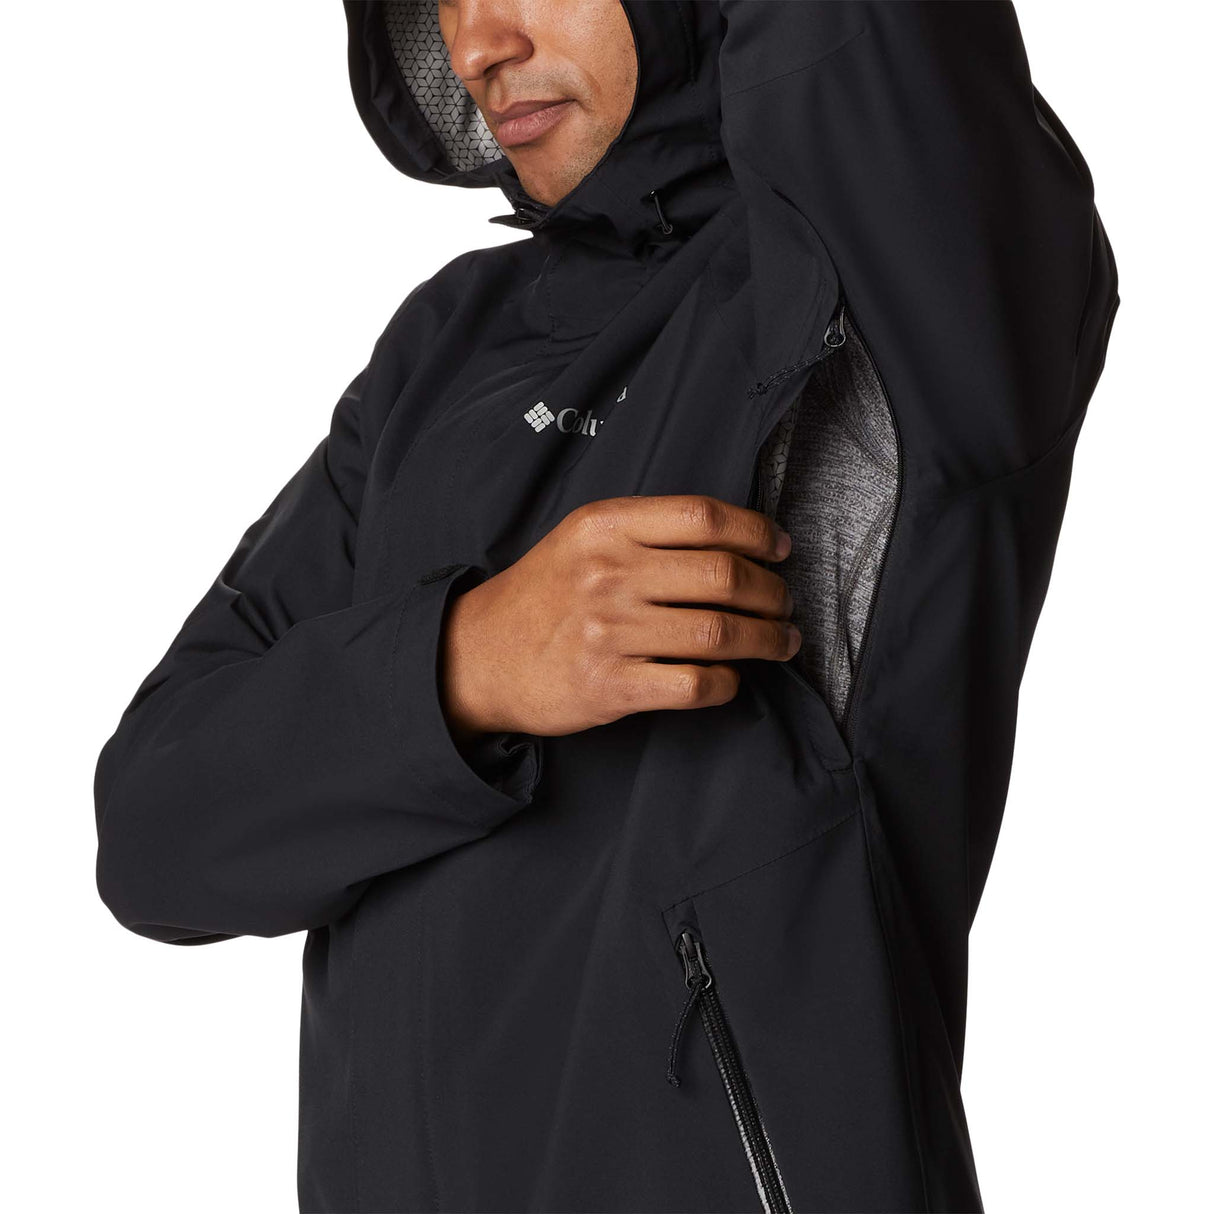 Columbia Earth Explorer manteau coquille noir homme manche